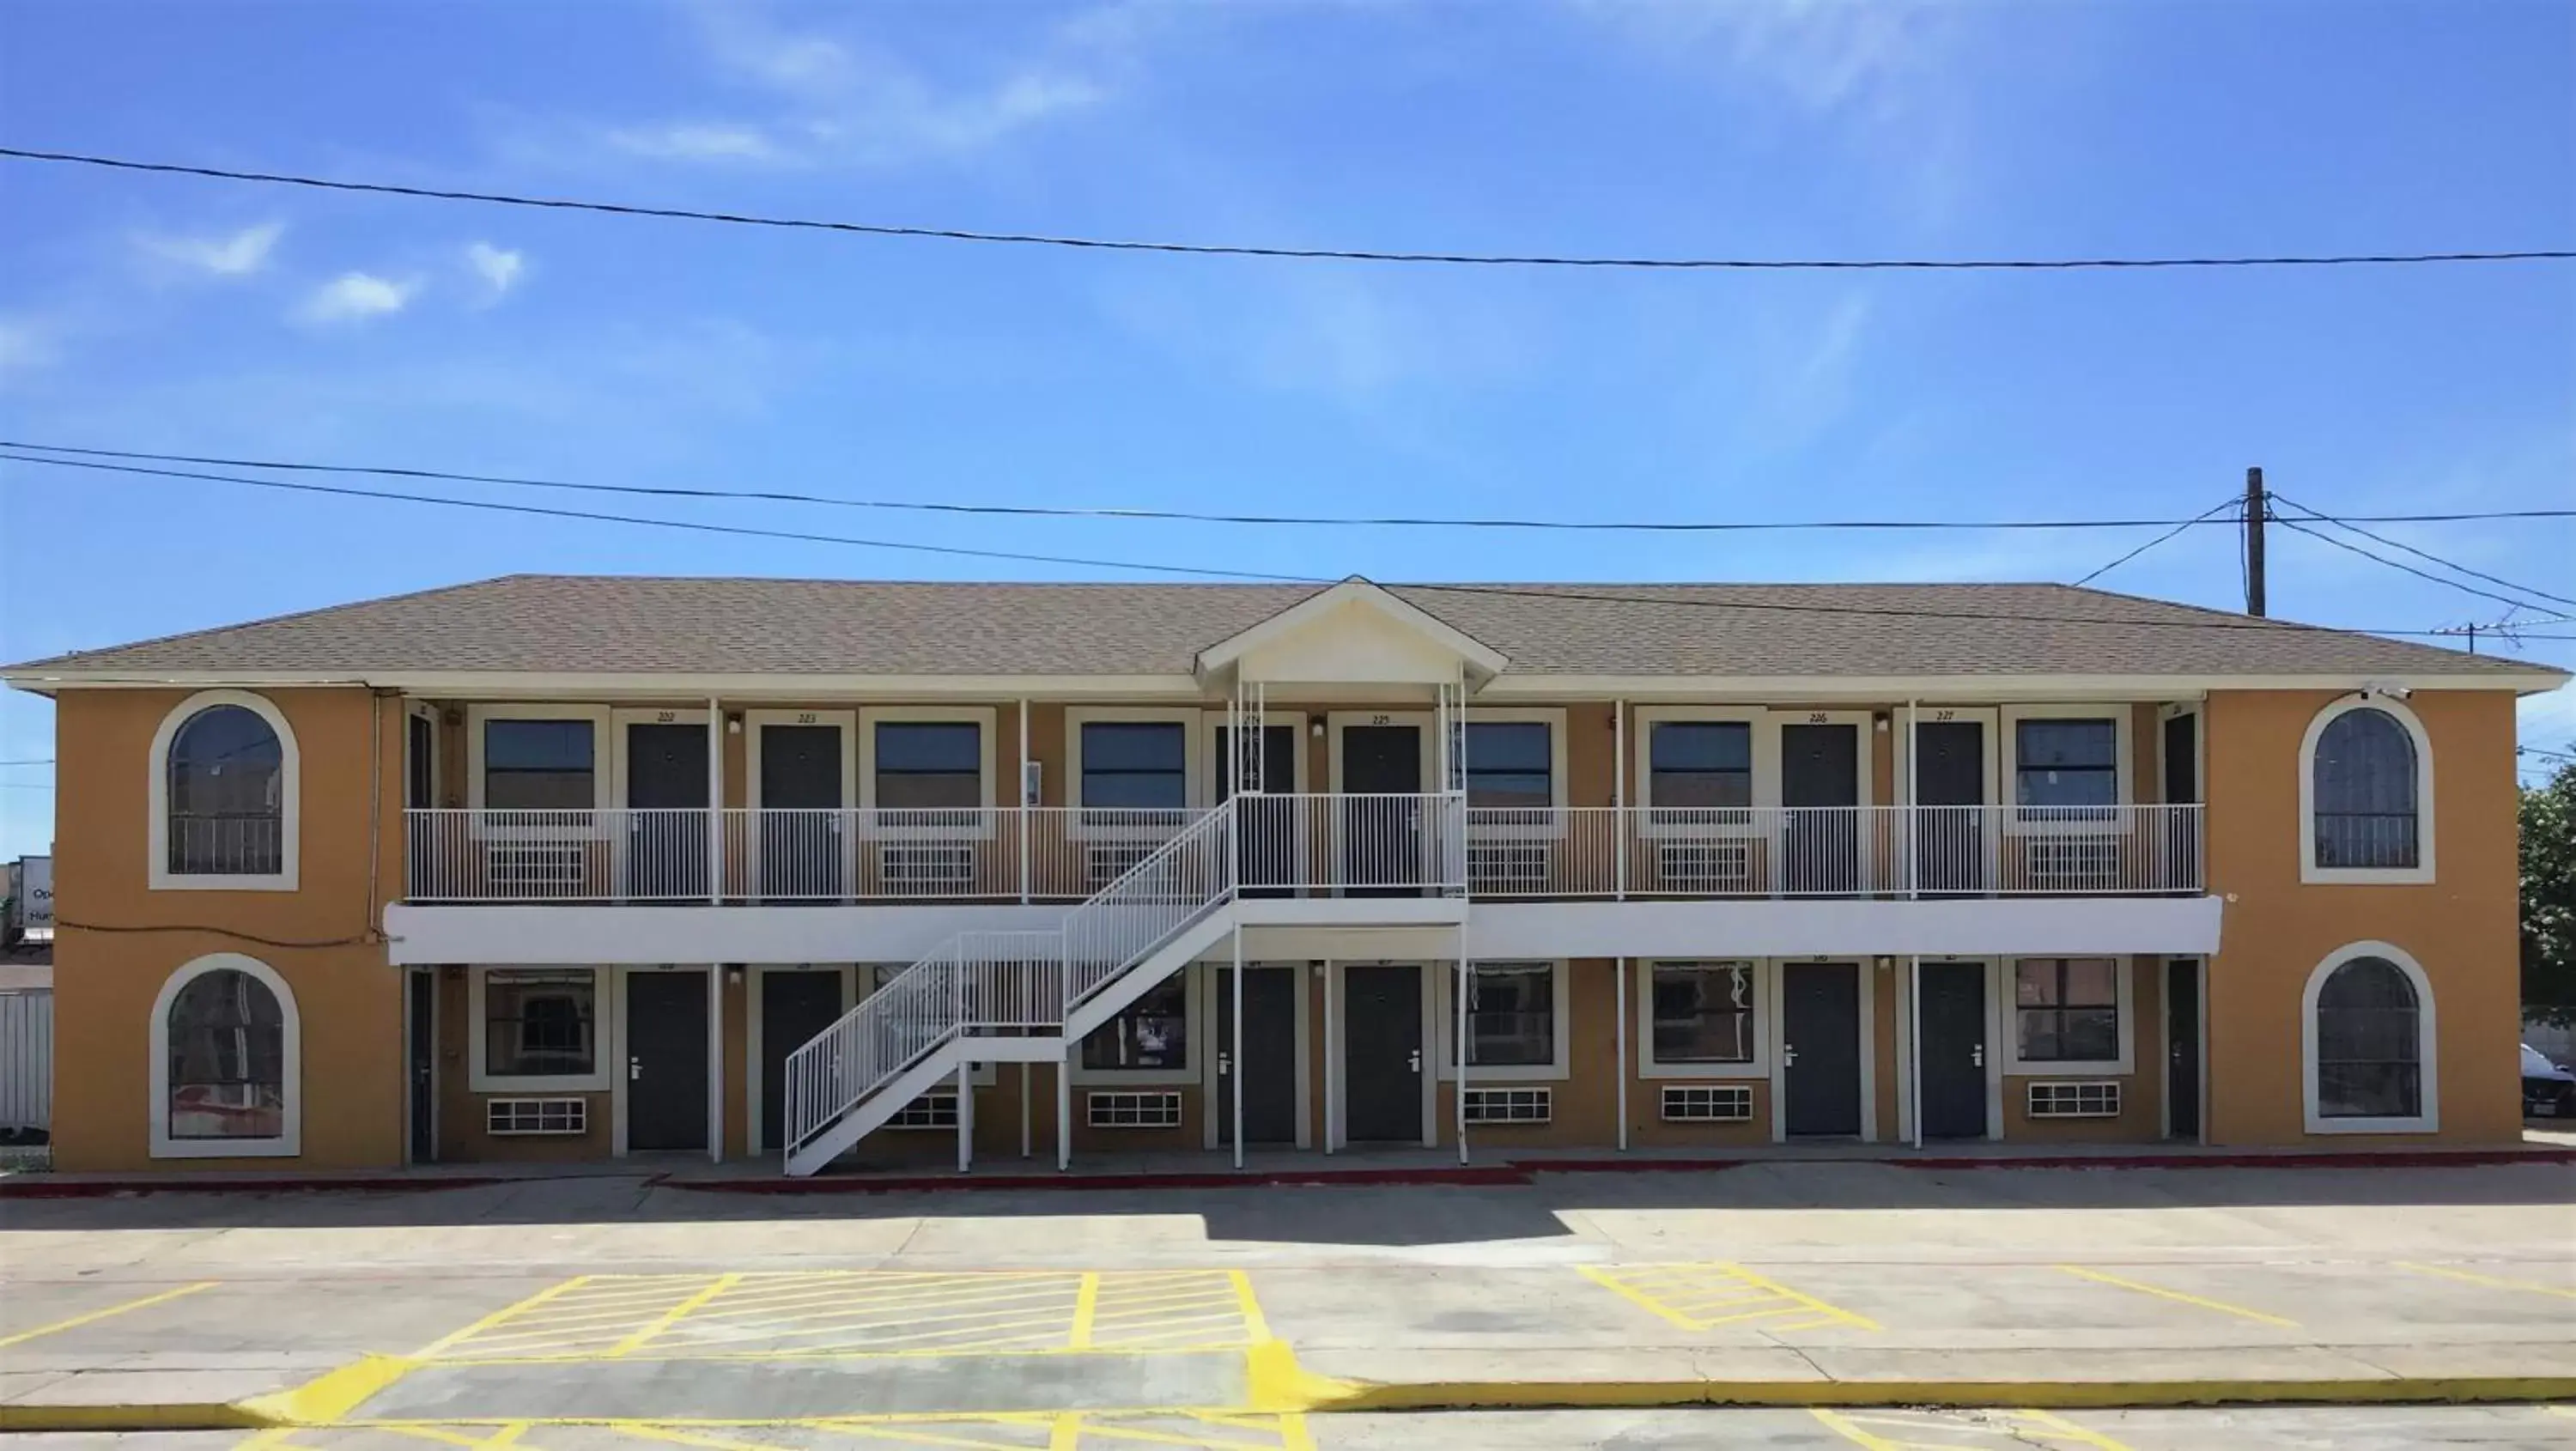 Property Building in Hwy 59 Motel Laredo Medical Center